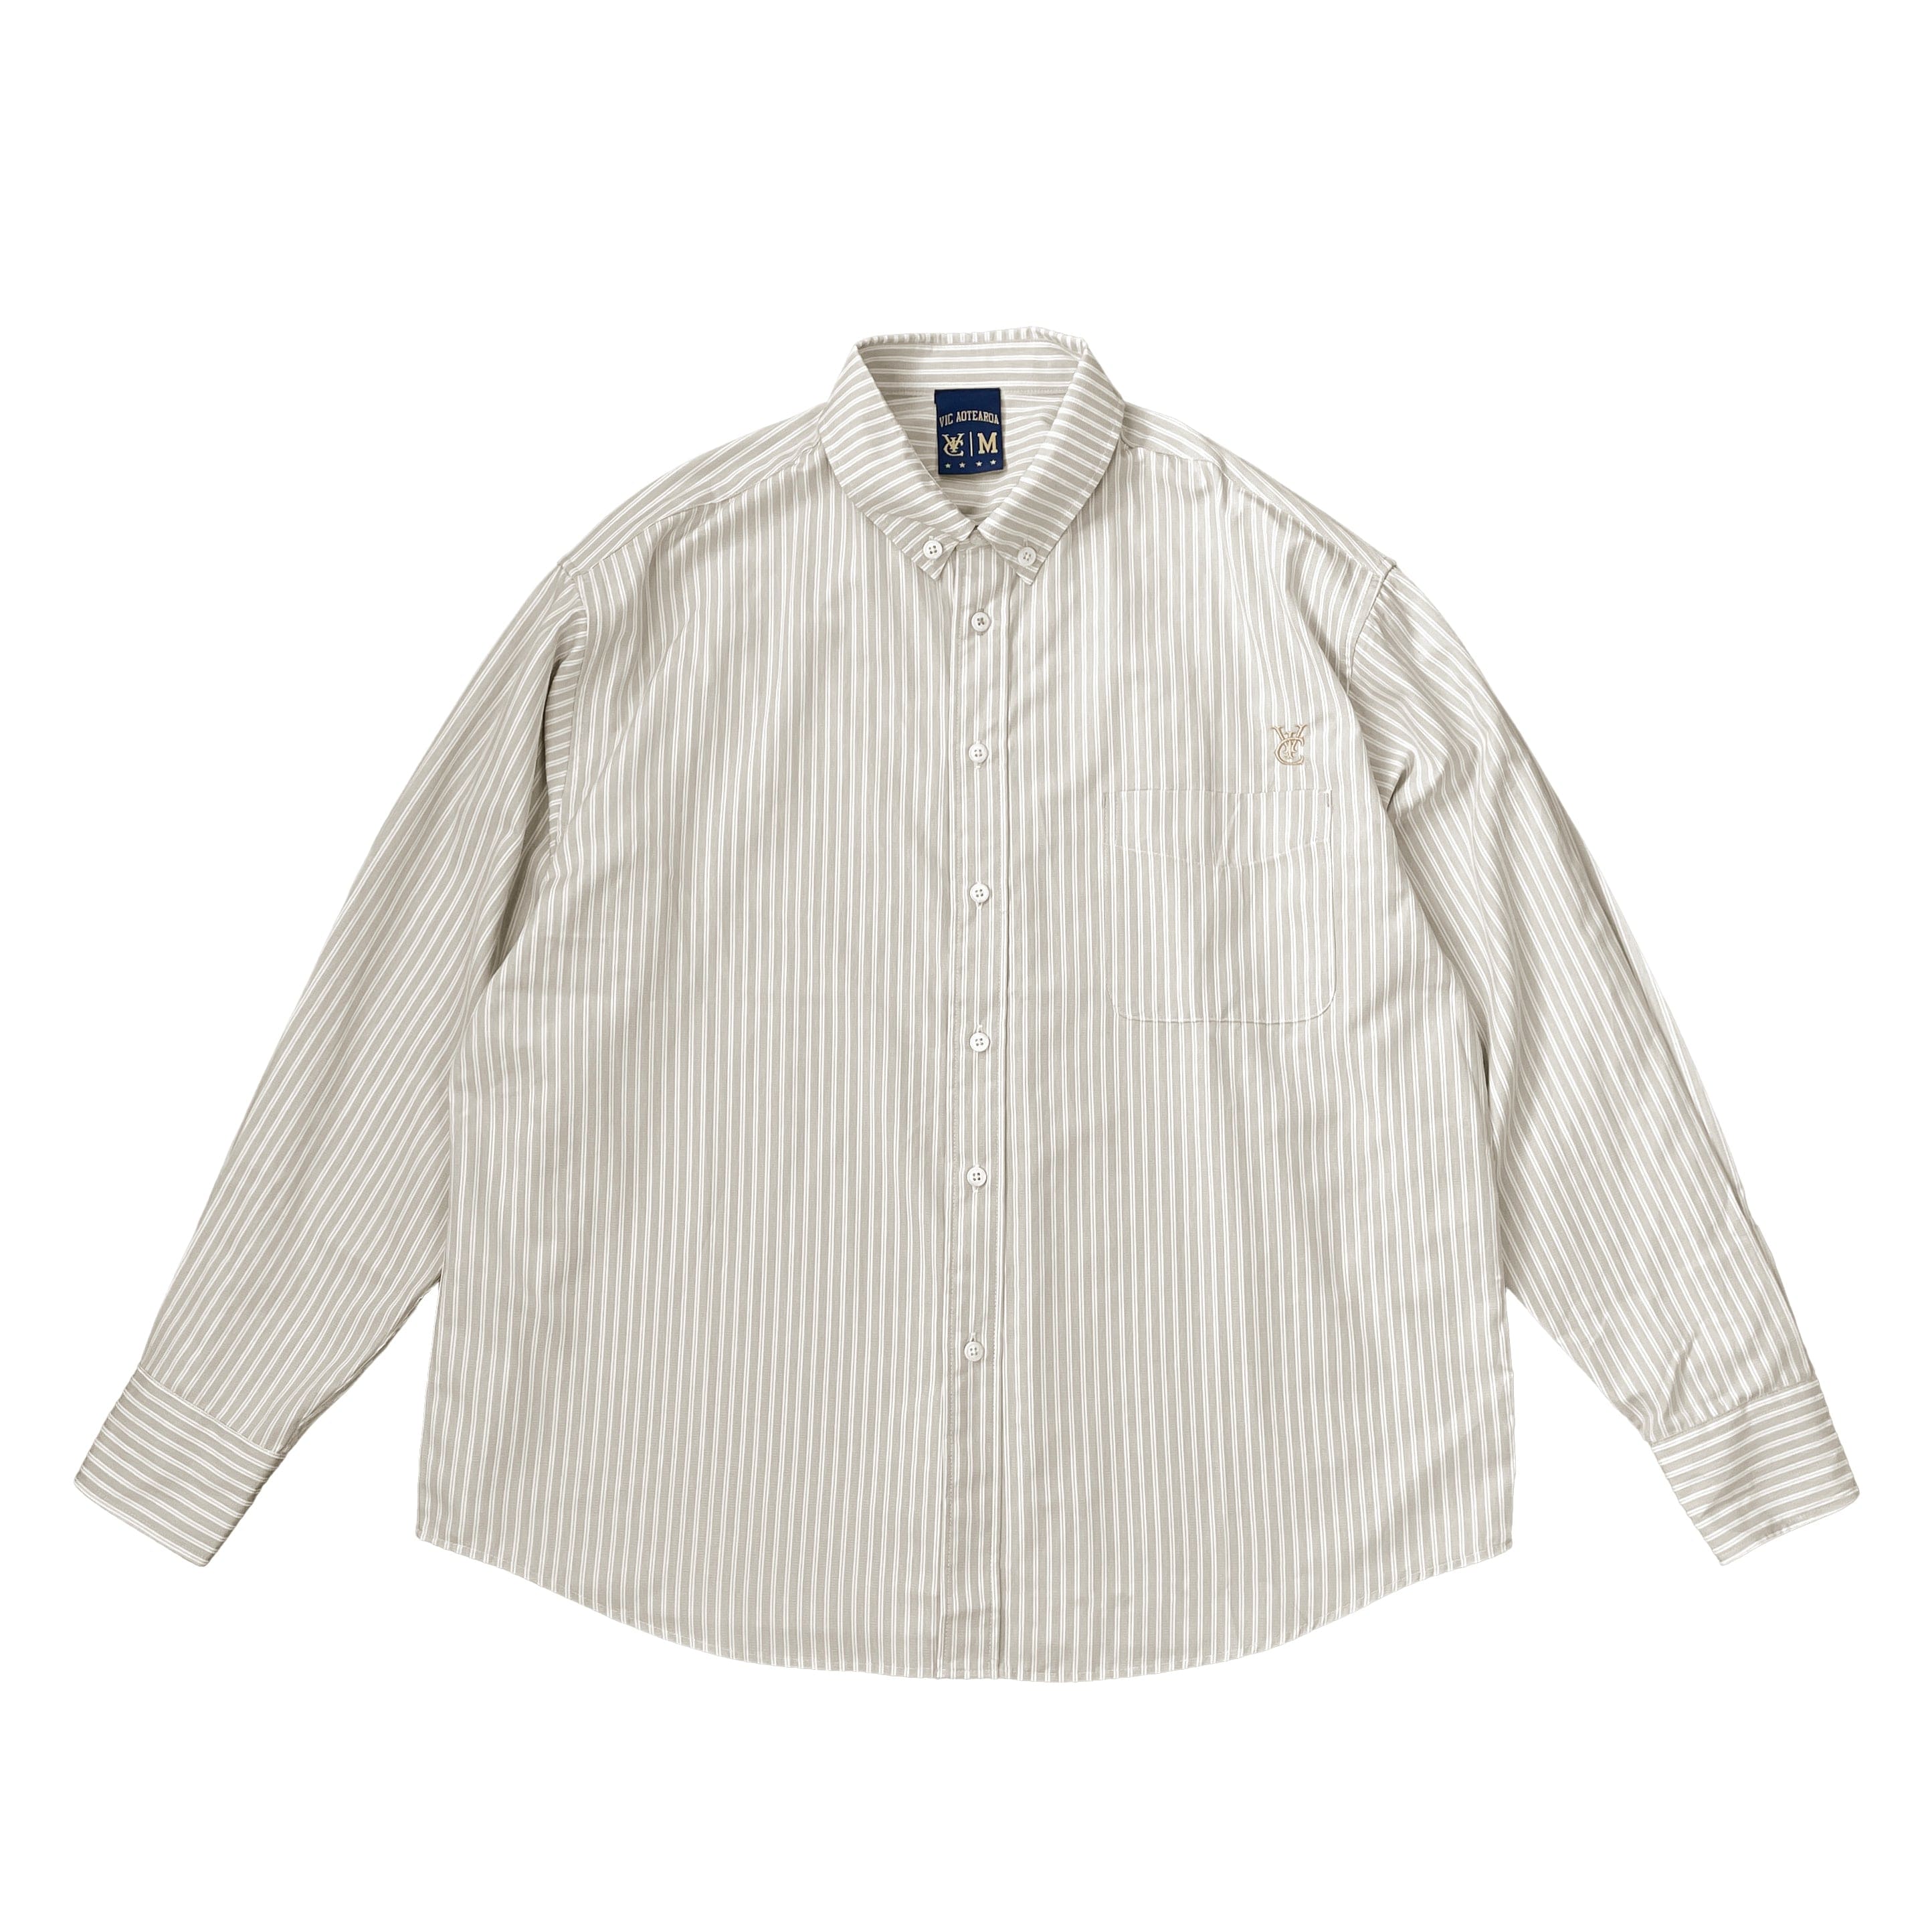 stripe boxy shirt, 90s vintage city boy style. Striped button up shirt